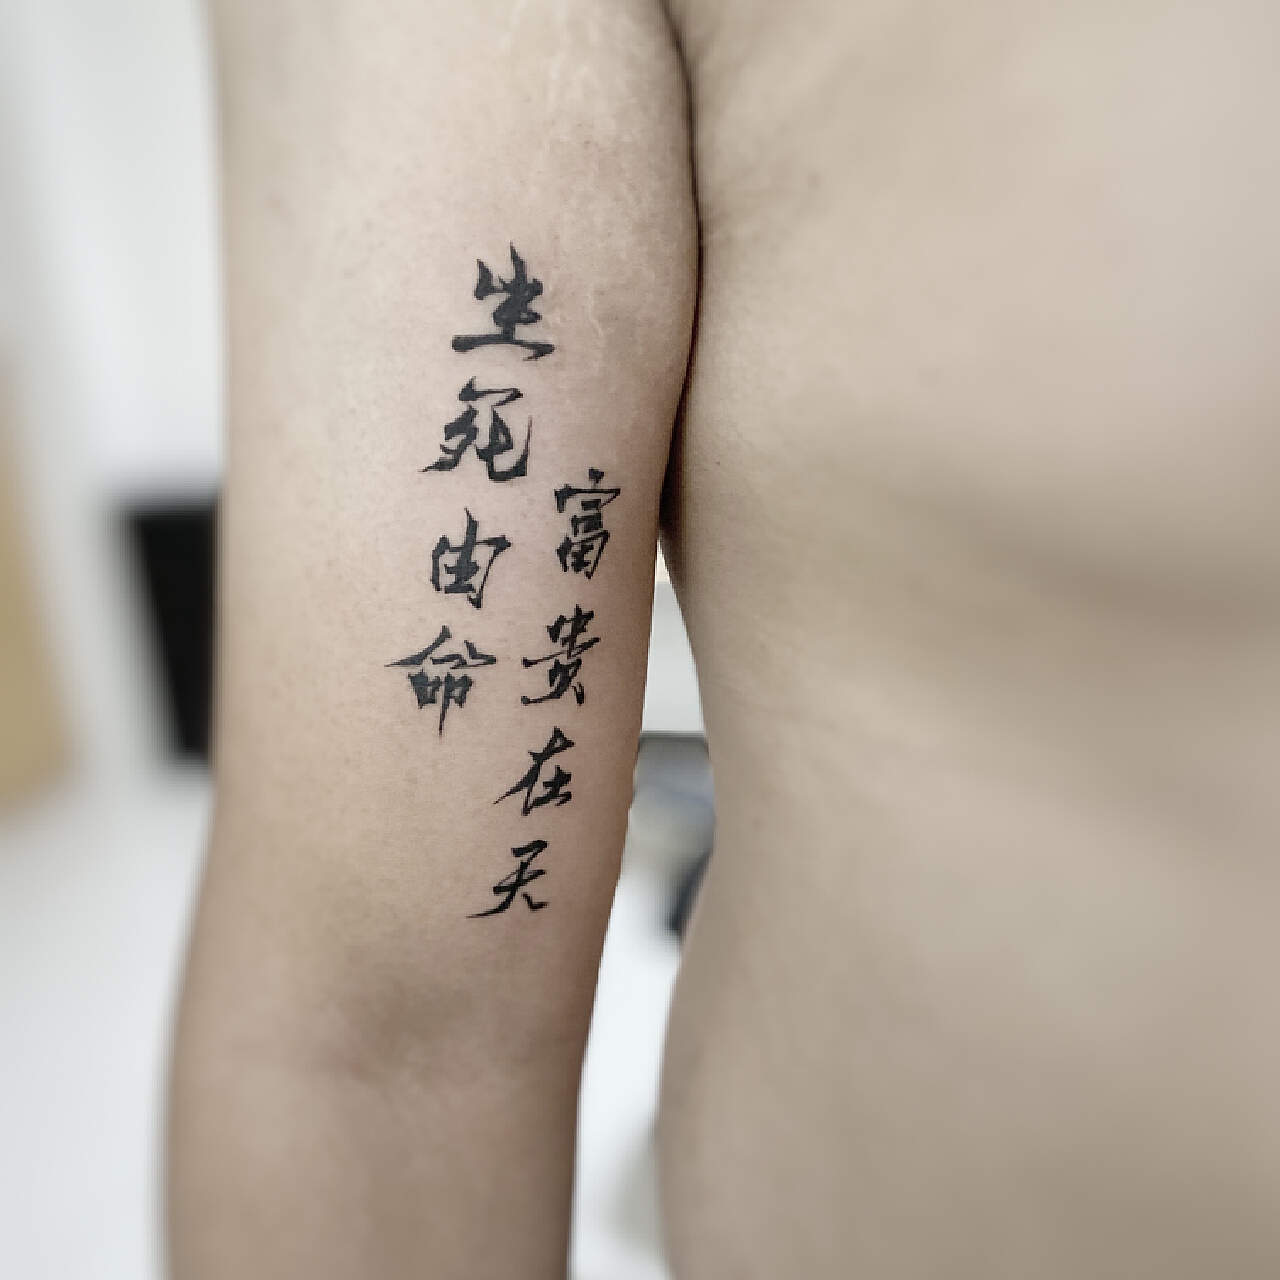 汉字纹身，不止有贝克汉姆那一款！ _纹身百科 - 纹身大咖